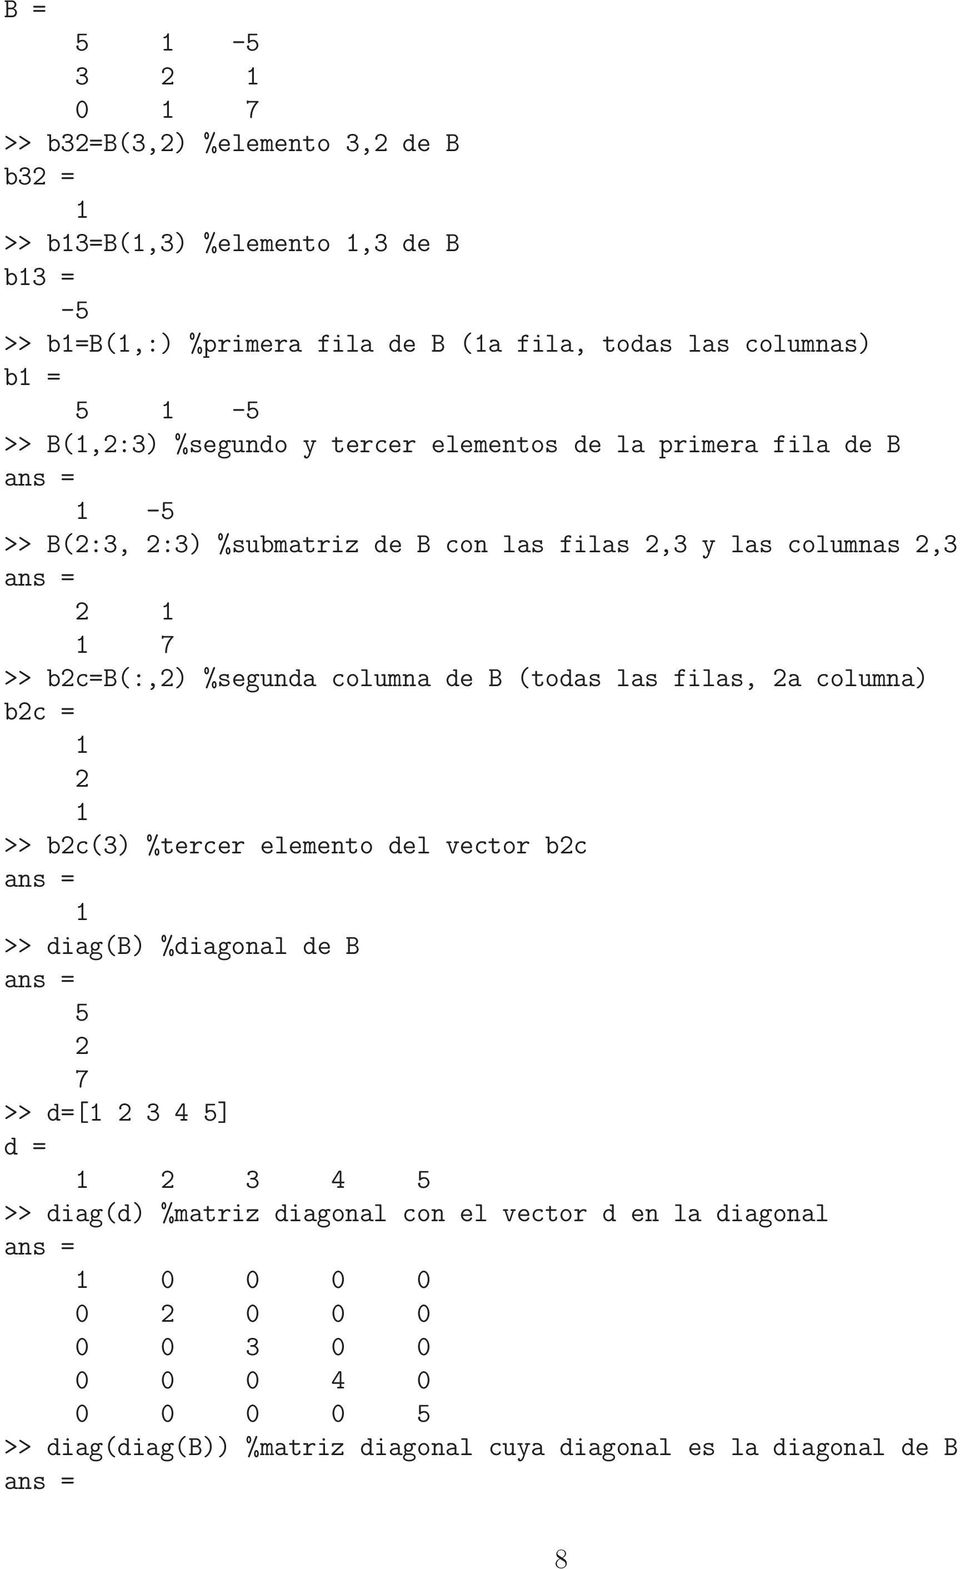 columna de B (todas las filas, 2a columna) b2c = 2 >> b2c(3) %tercer elemento del vector b2c >> diag(b) %diagonal de B 5 2 7 >> d=[ 2 3 4 5] d = 2 3 4 5 >>